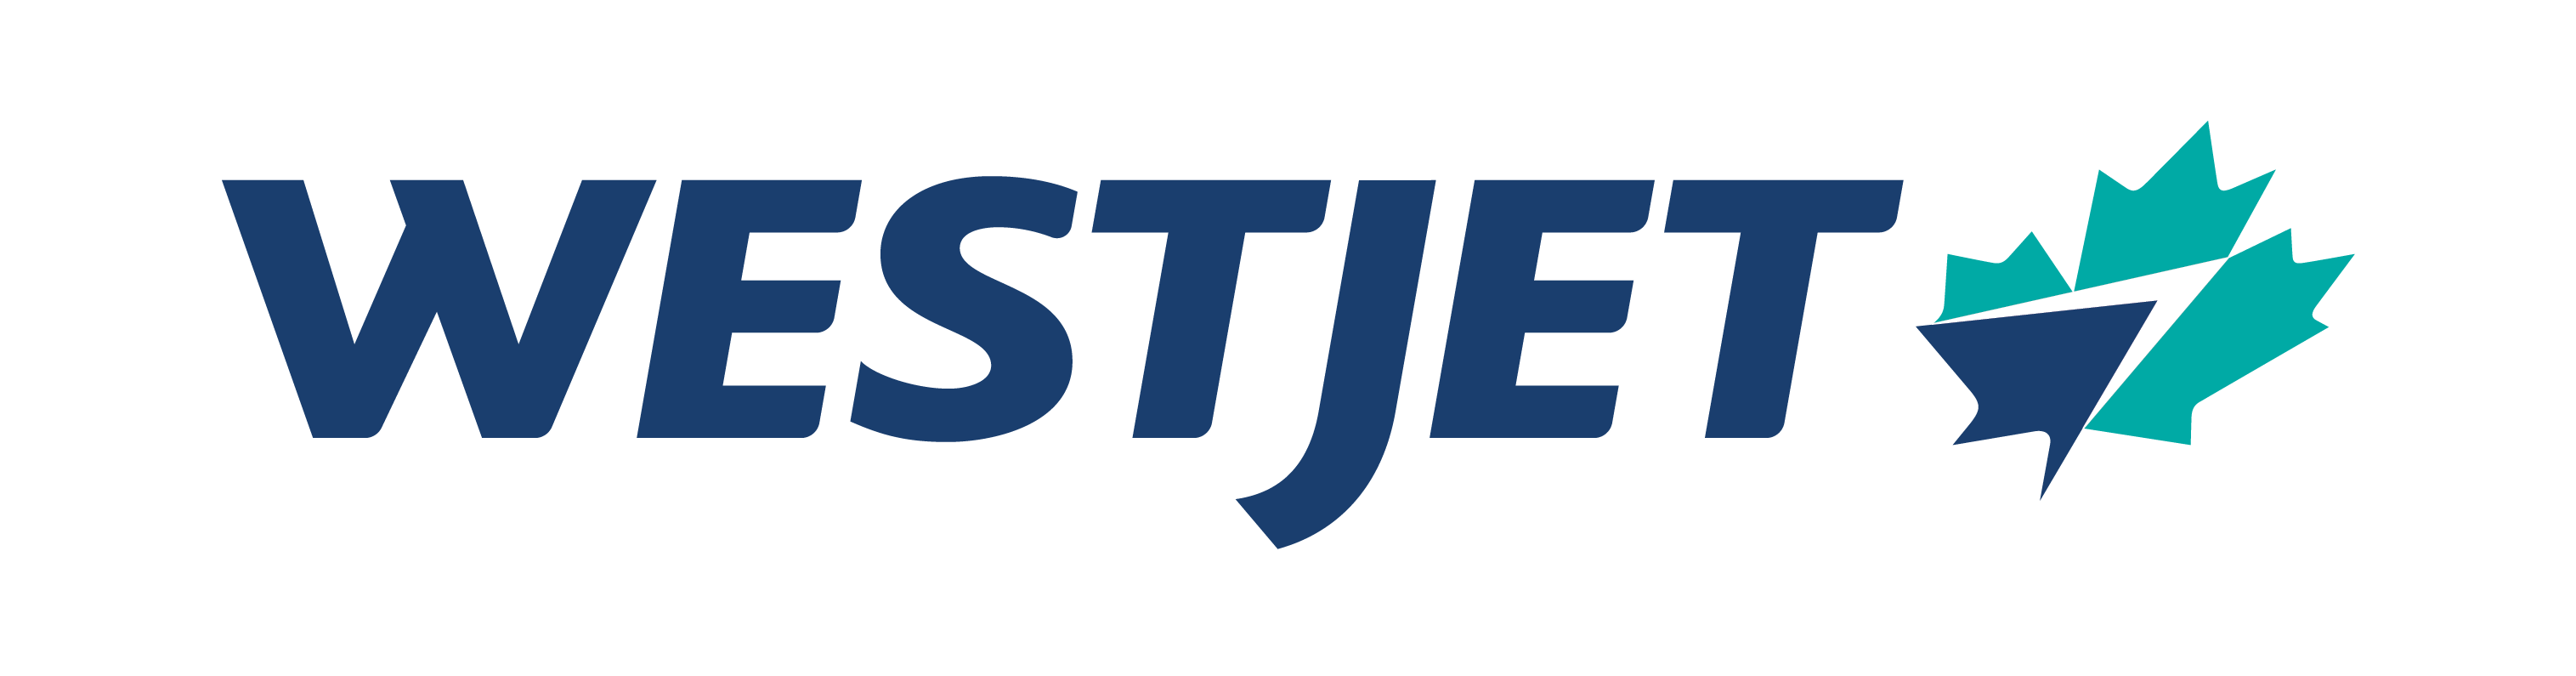 Media resources | WestJet official site